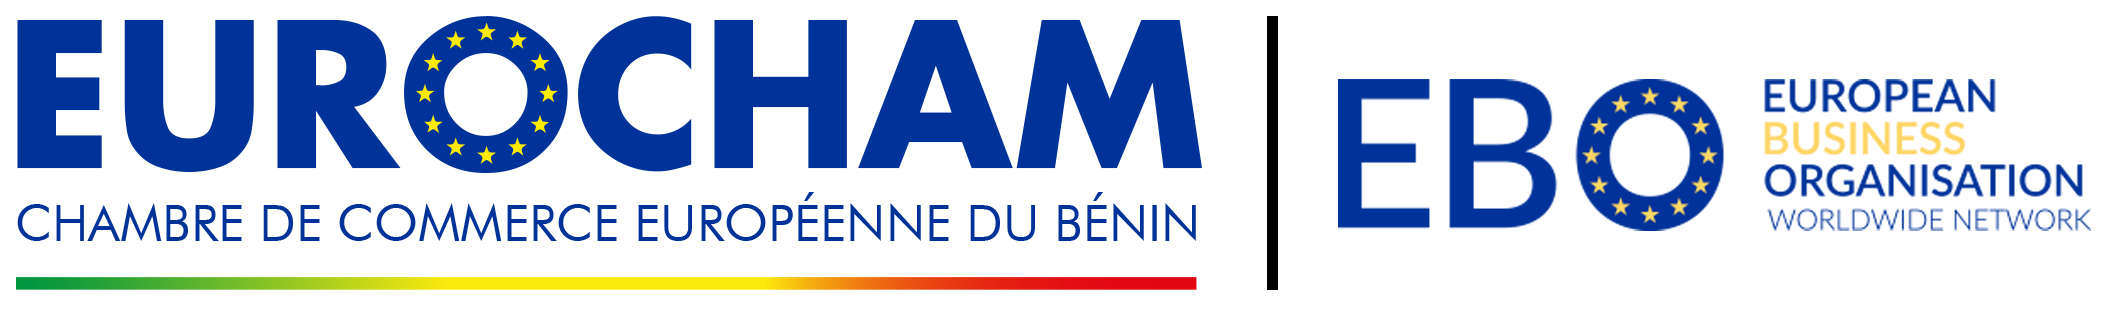 Eurocham Bénin